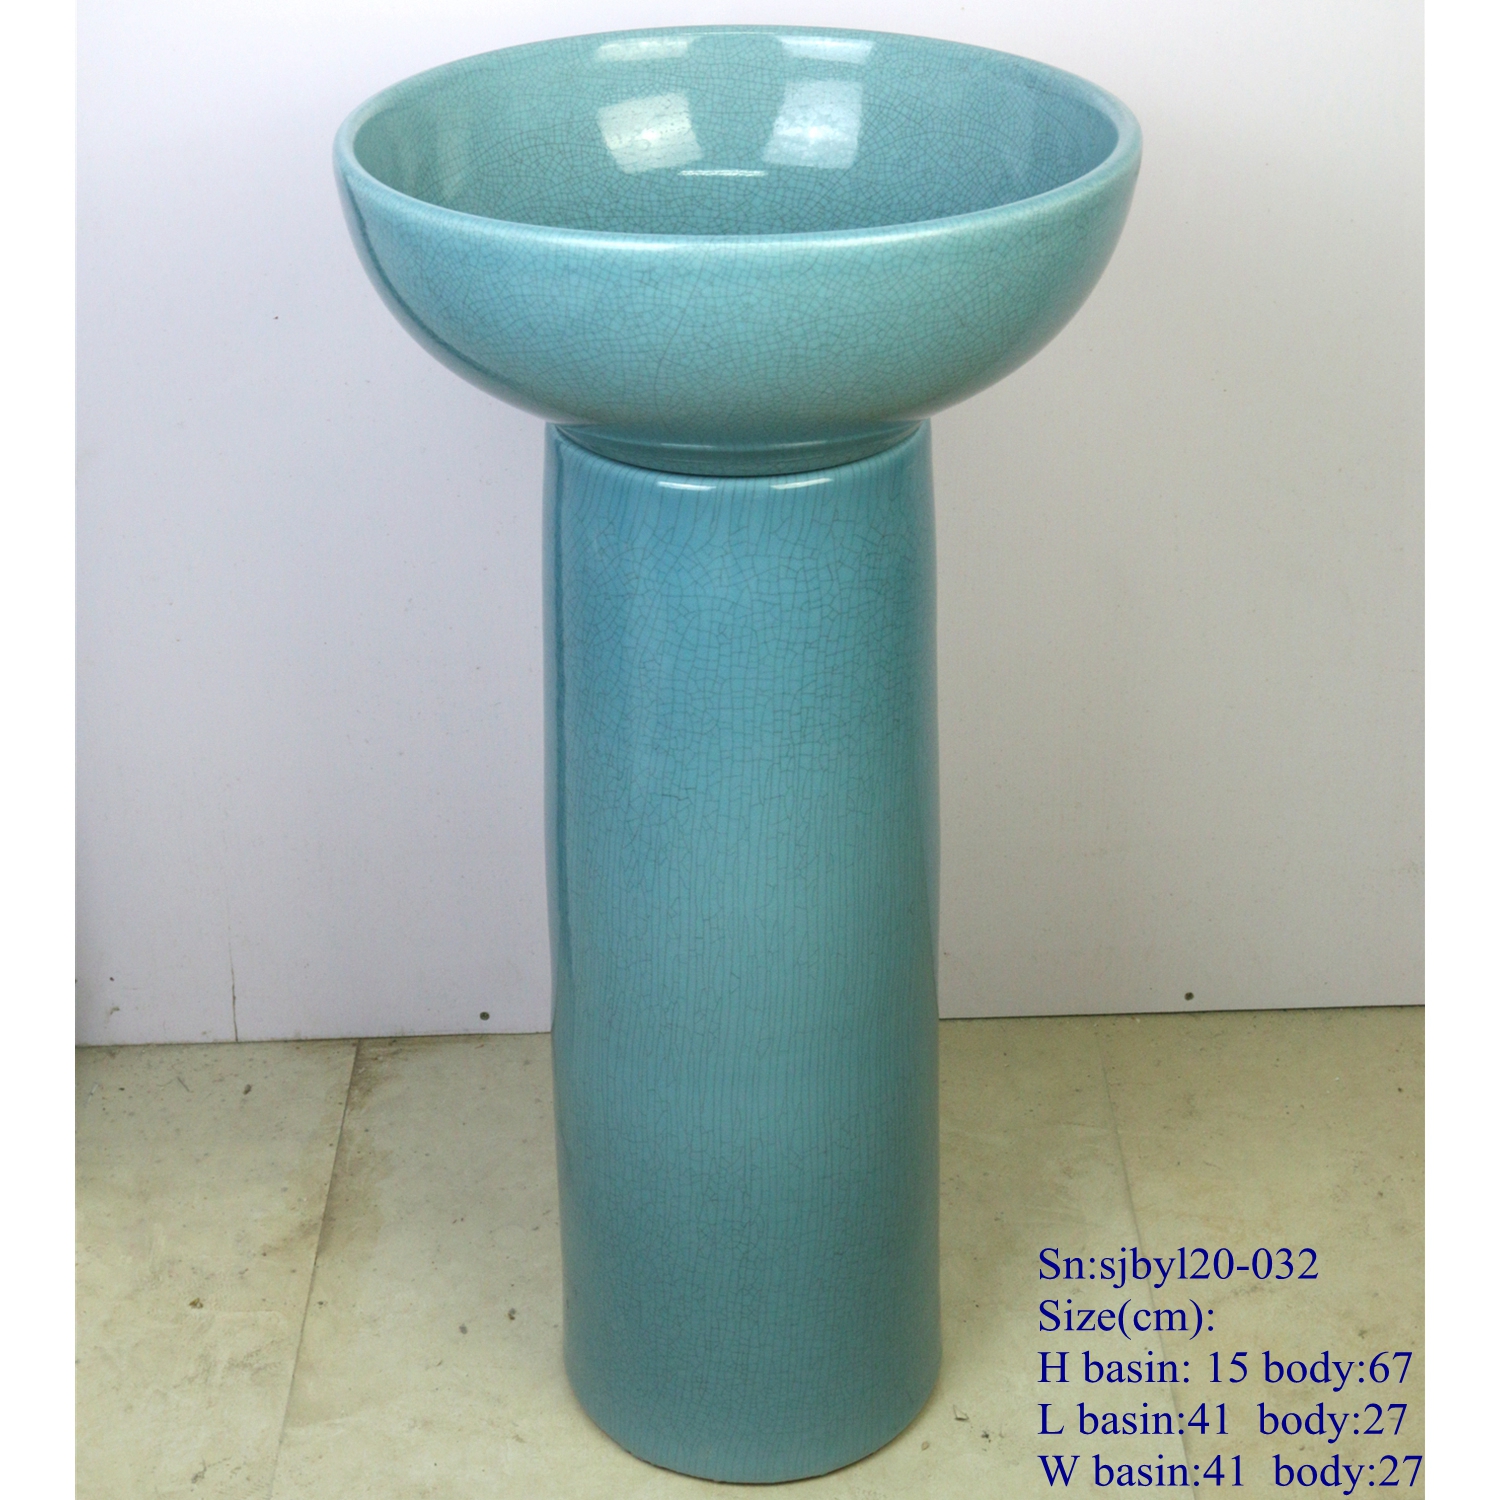 sjbyl120-032 Restaurant Nesting basin - turquoise blue crackle glaze porcelain pedestal sink